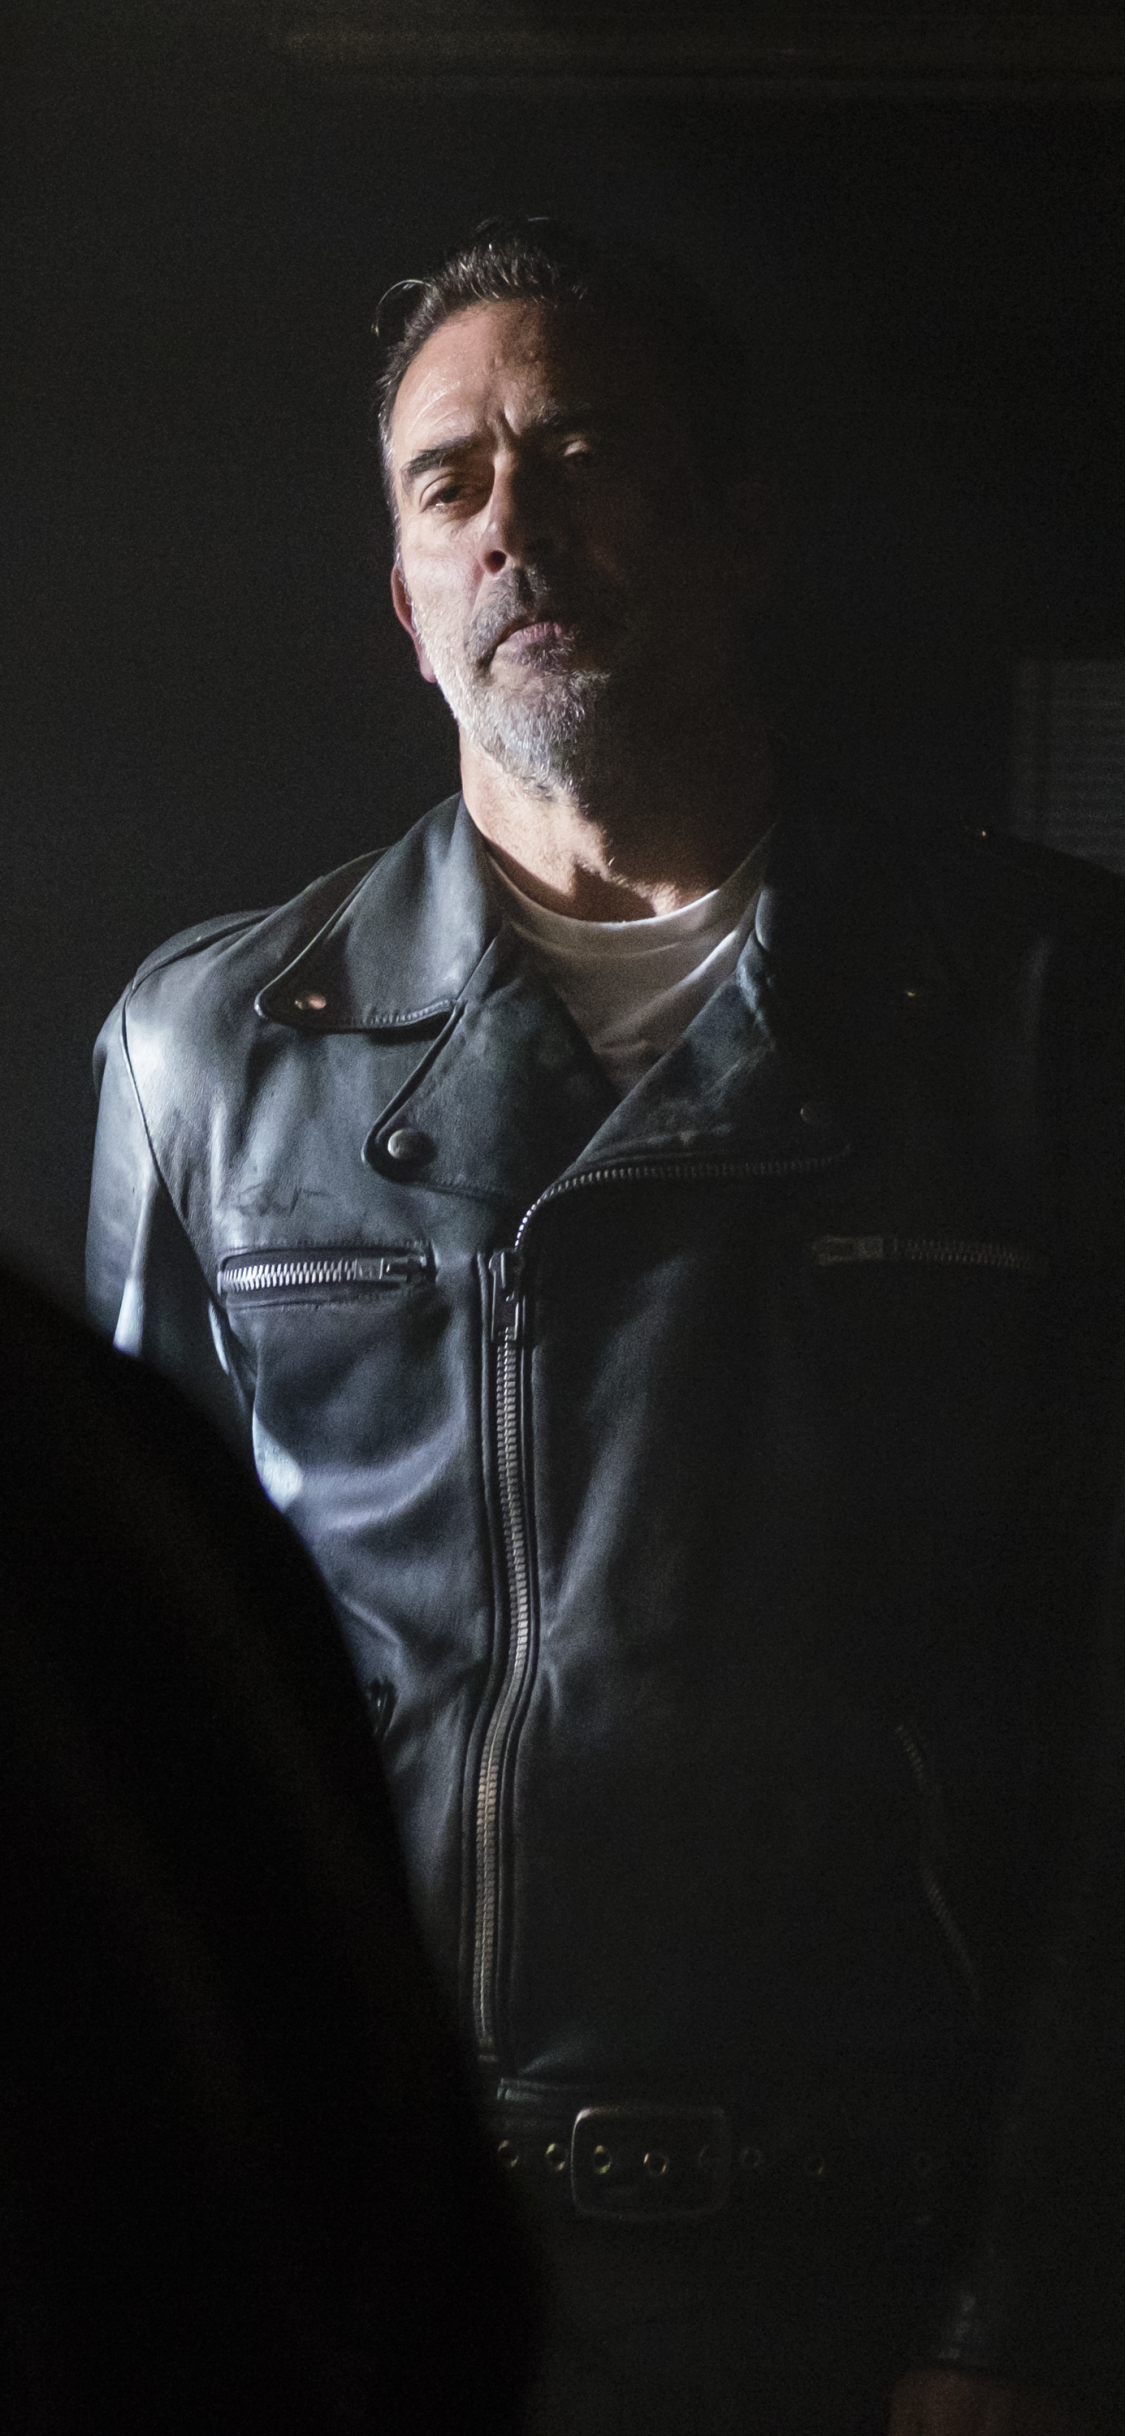 Descarga gratuita de fondo de pantalla para móvil de Series De Televisión, The Walking Dead, Jeffrey Dean Morgan, Negan (Los Muertos Vivientes).